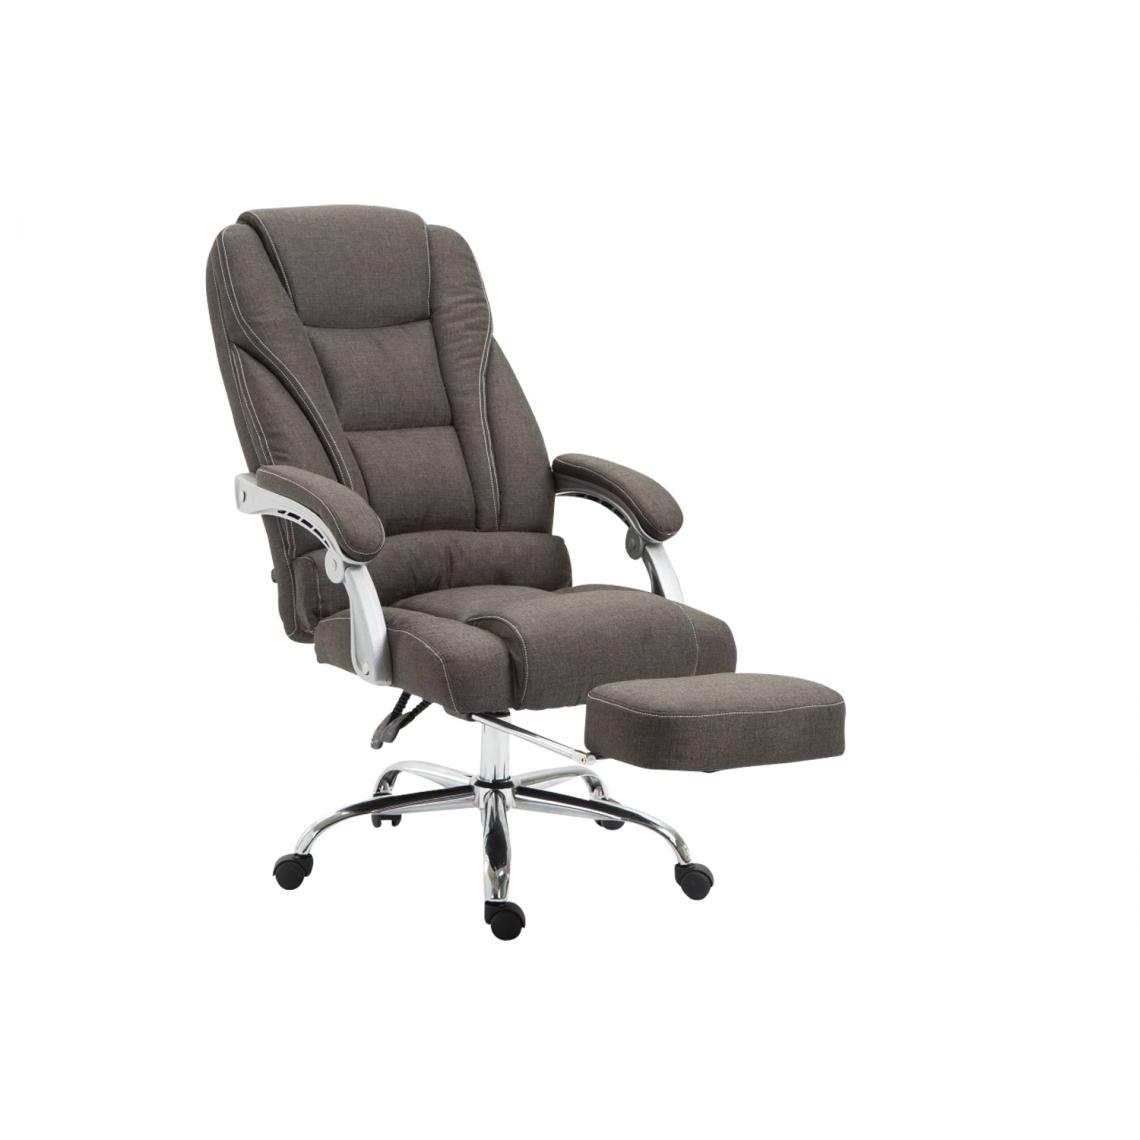 Icaverne - Esthetique Chaise de bureau en tissu reference Quito couleur gris foncé - Chaises